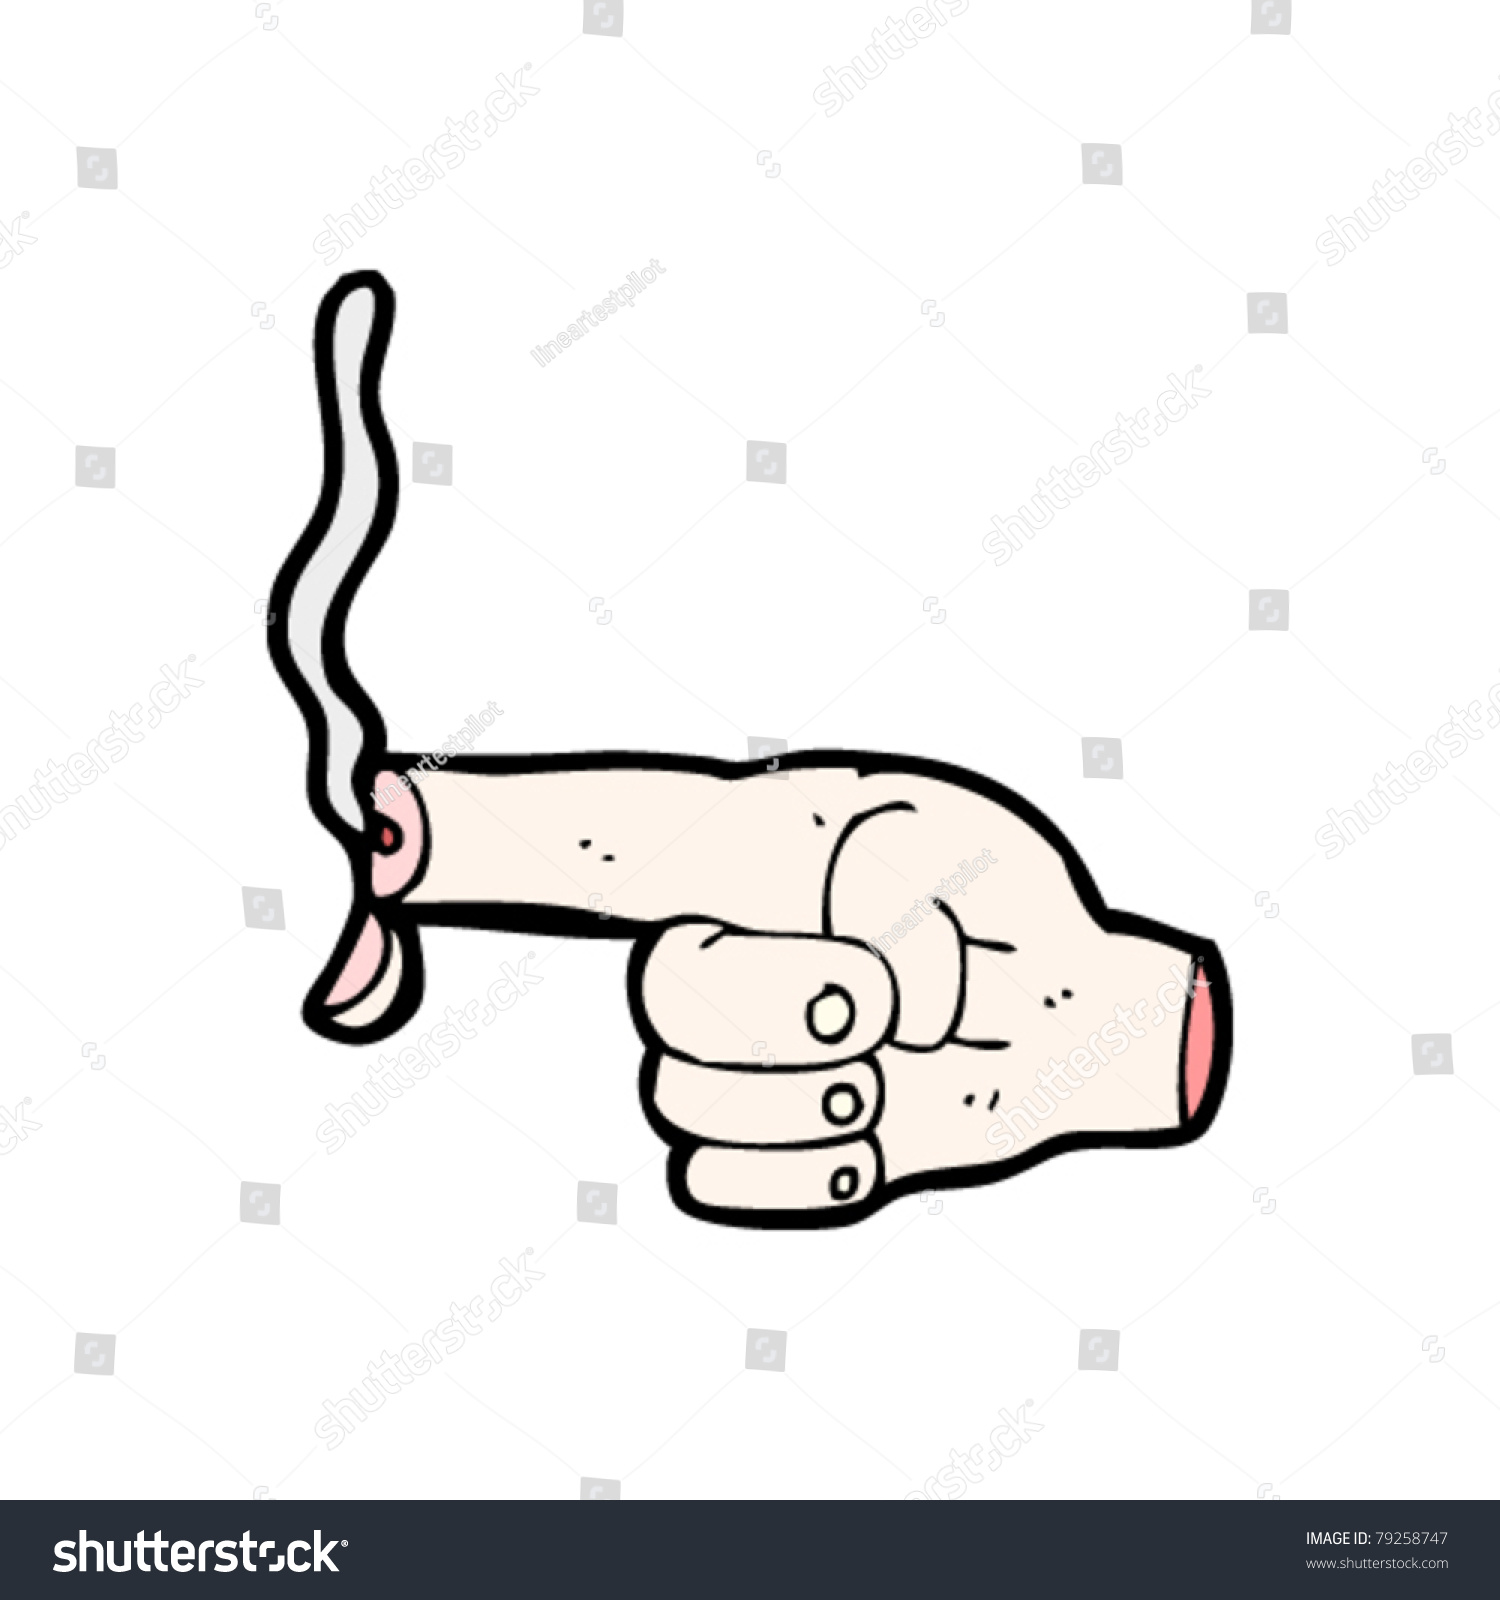 Smoking Finger Gun Cartoon Stock Vector 79258747 - Shutterstock